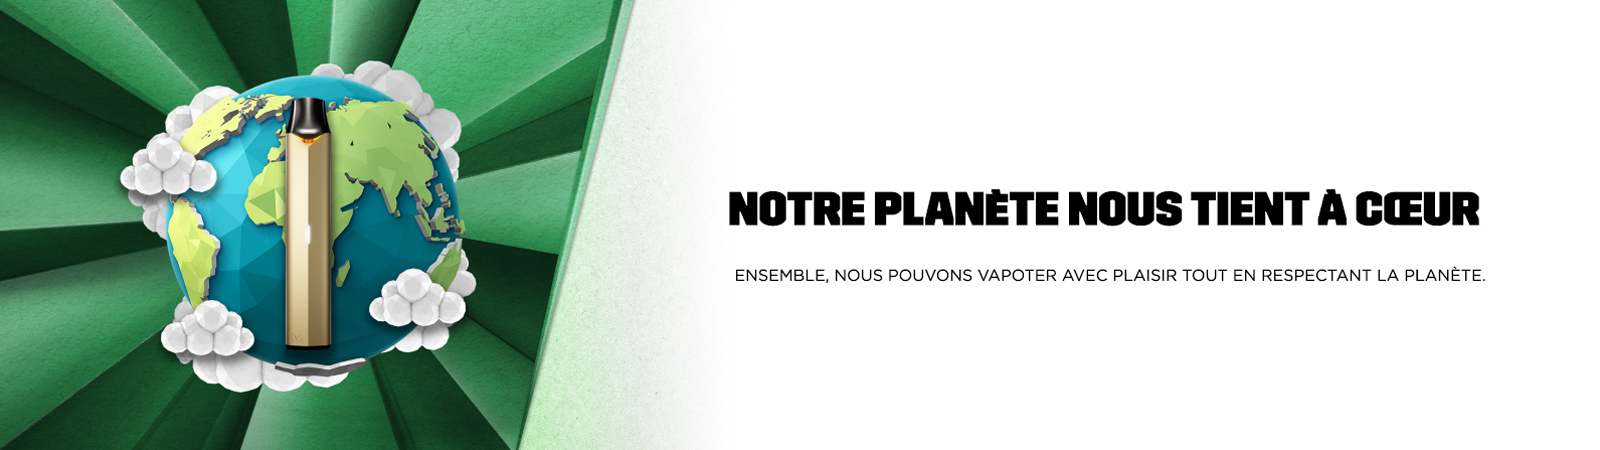 une e-cigarette Vuse avec le globe terrestre et le message: Notre planète nous tient à coeur